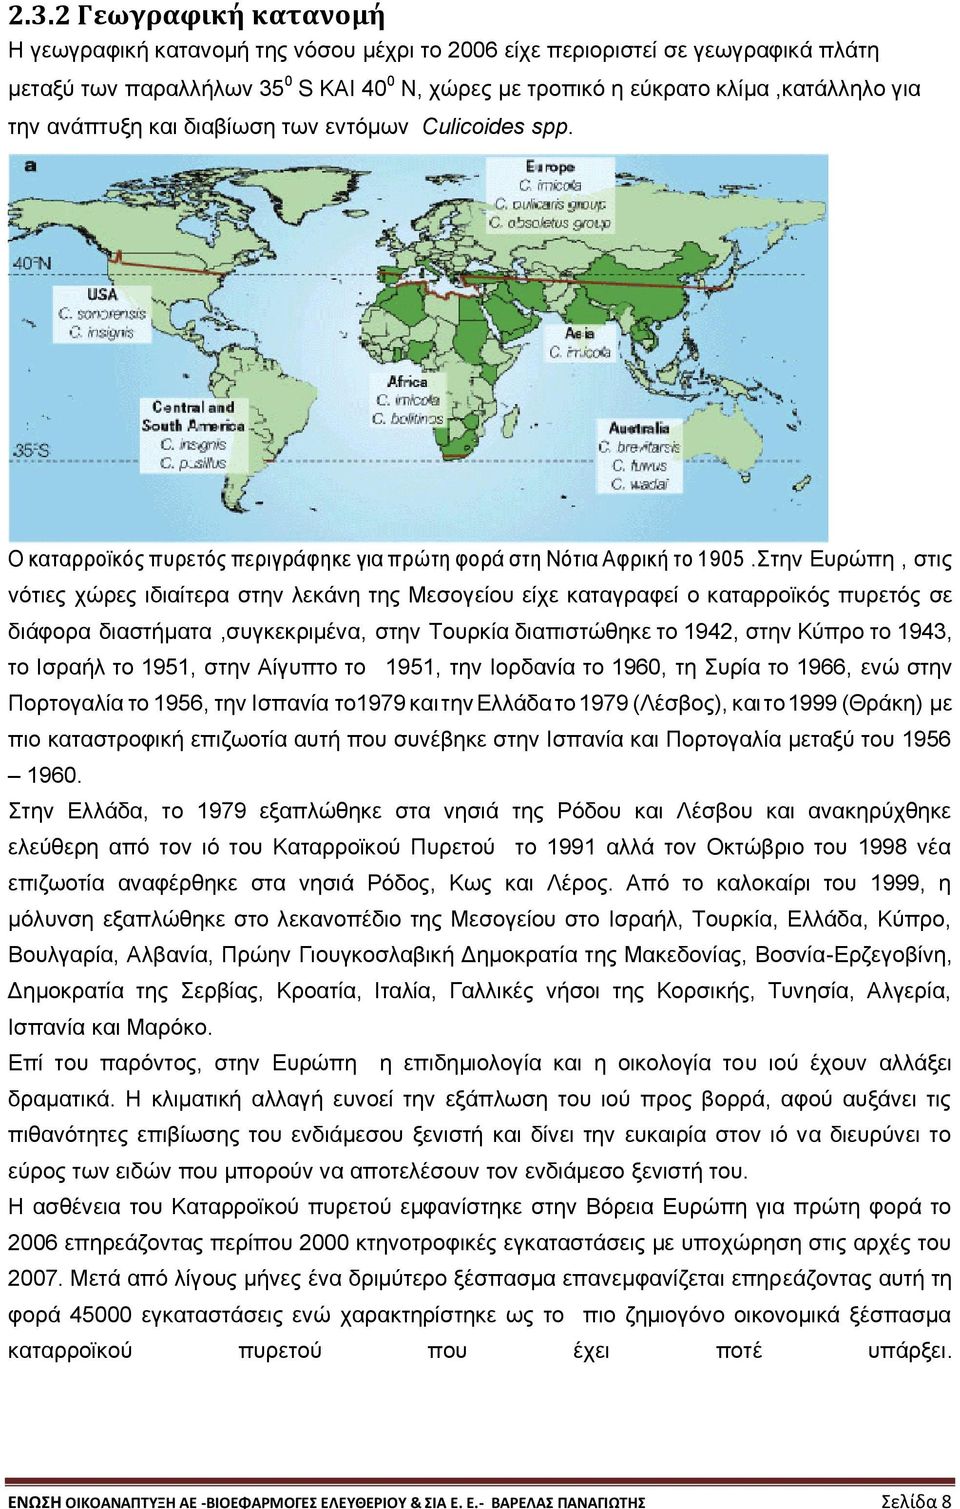 Στην Ευρώπη, στις νότιες χώρες ιδιαίτερα στην λεκάνη της Μεσογείου είχε καταγραφεί ο καταρροϊκός πυρετός σε διάφορα διαστήματα,συγκεκριμένα, στην Τουρκία διαπιστώθηκε το 1942, στην Κύπρο το 1943, το